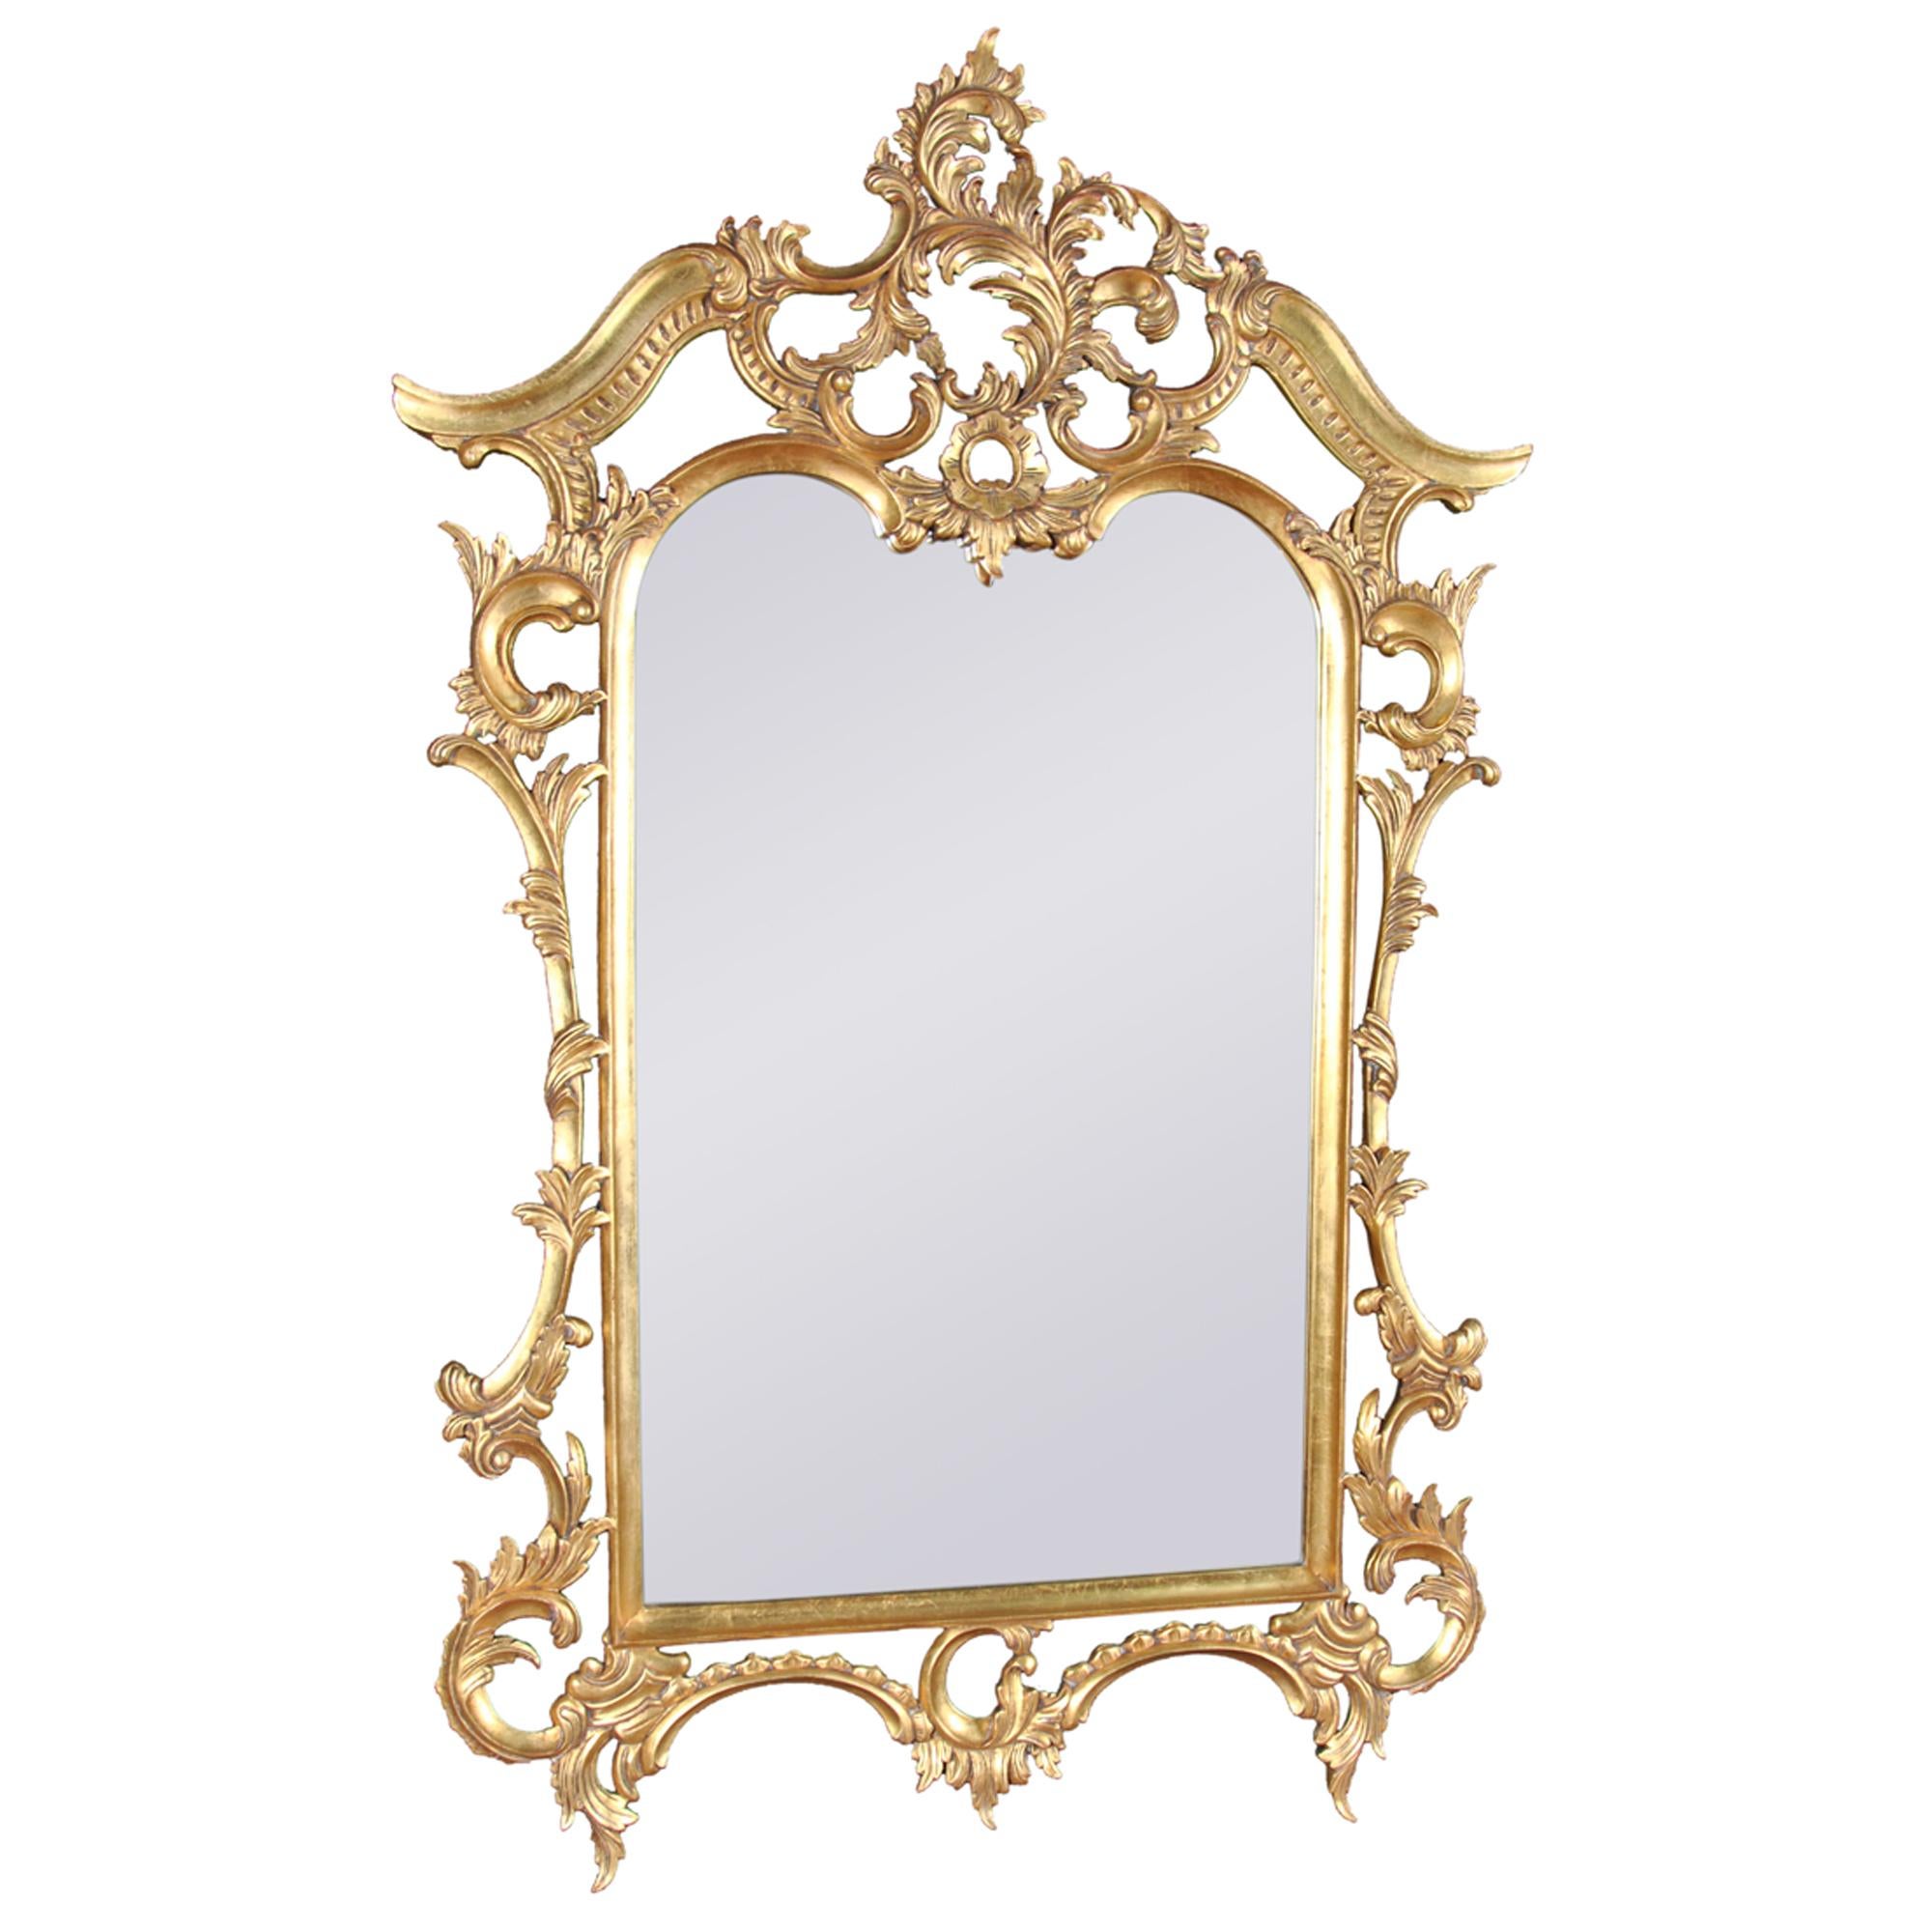 Miroir Chippendale à feuilles d'or de Niagara Furniture, le verre biseauté ayant été taillé à la main et fixé au cadre sculpté et percé à la main. Notre plus belle reproduction de cadre de miroir en bois massif.

Dimensions 40″w x 2″d x 63″h